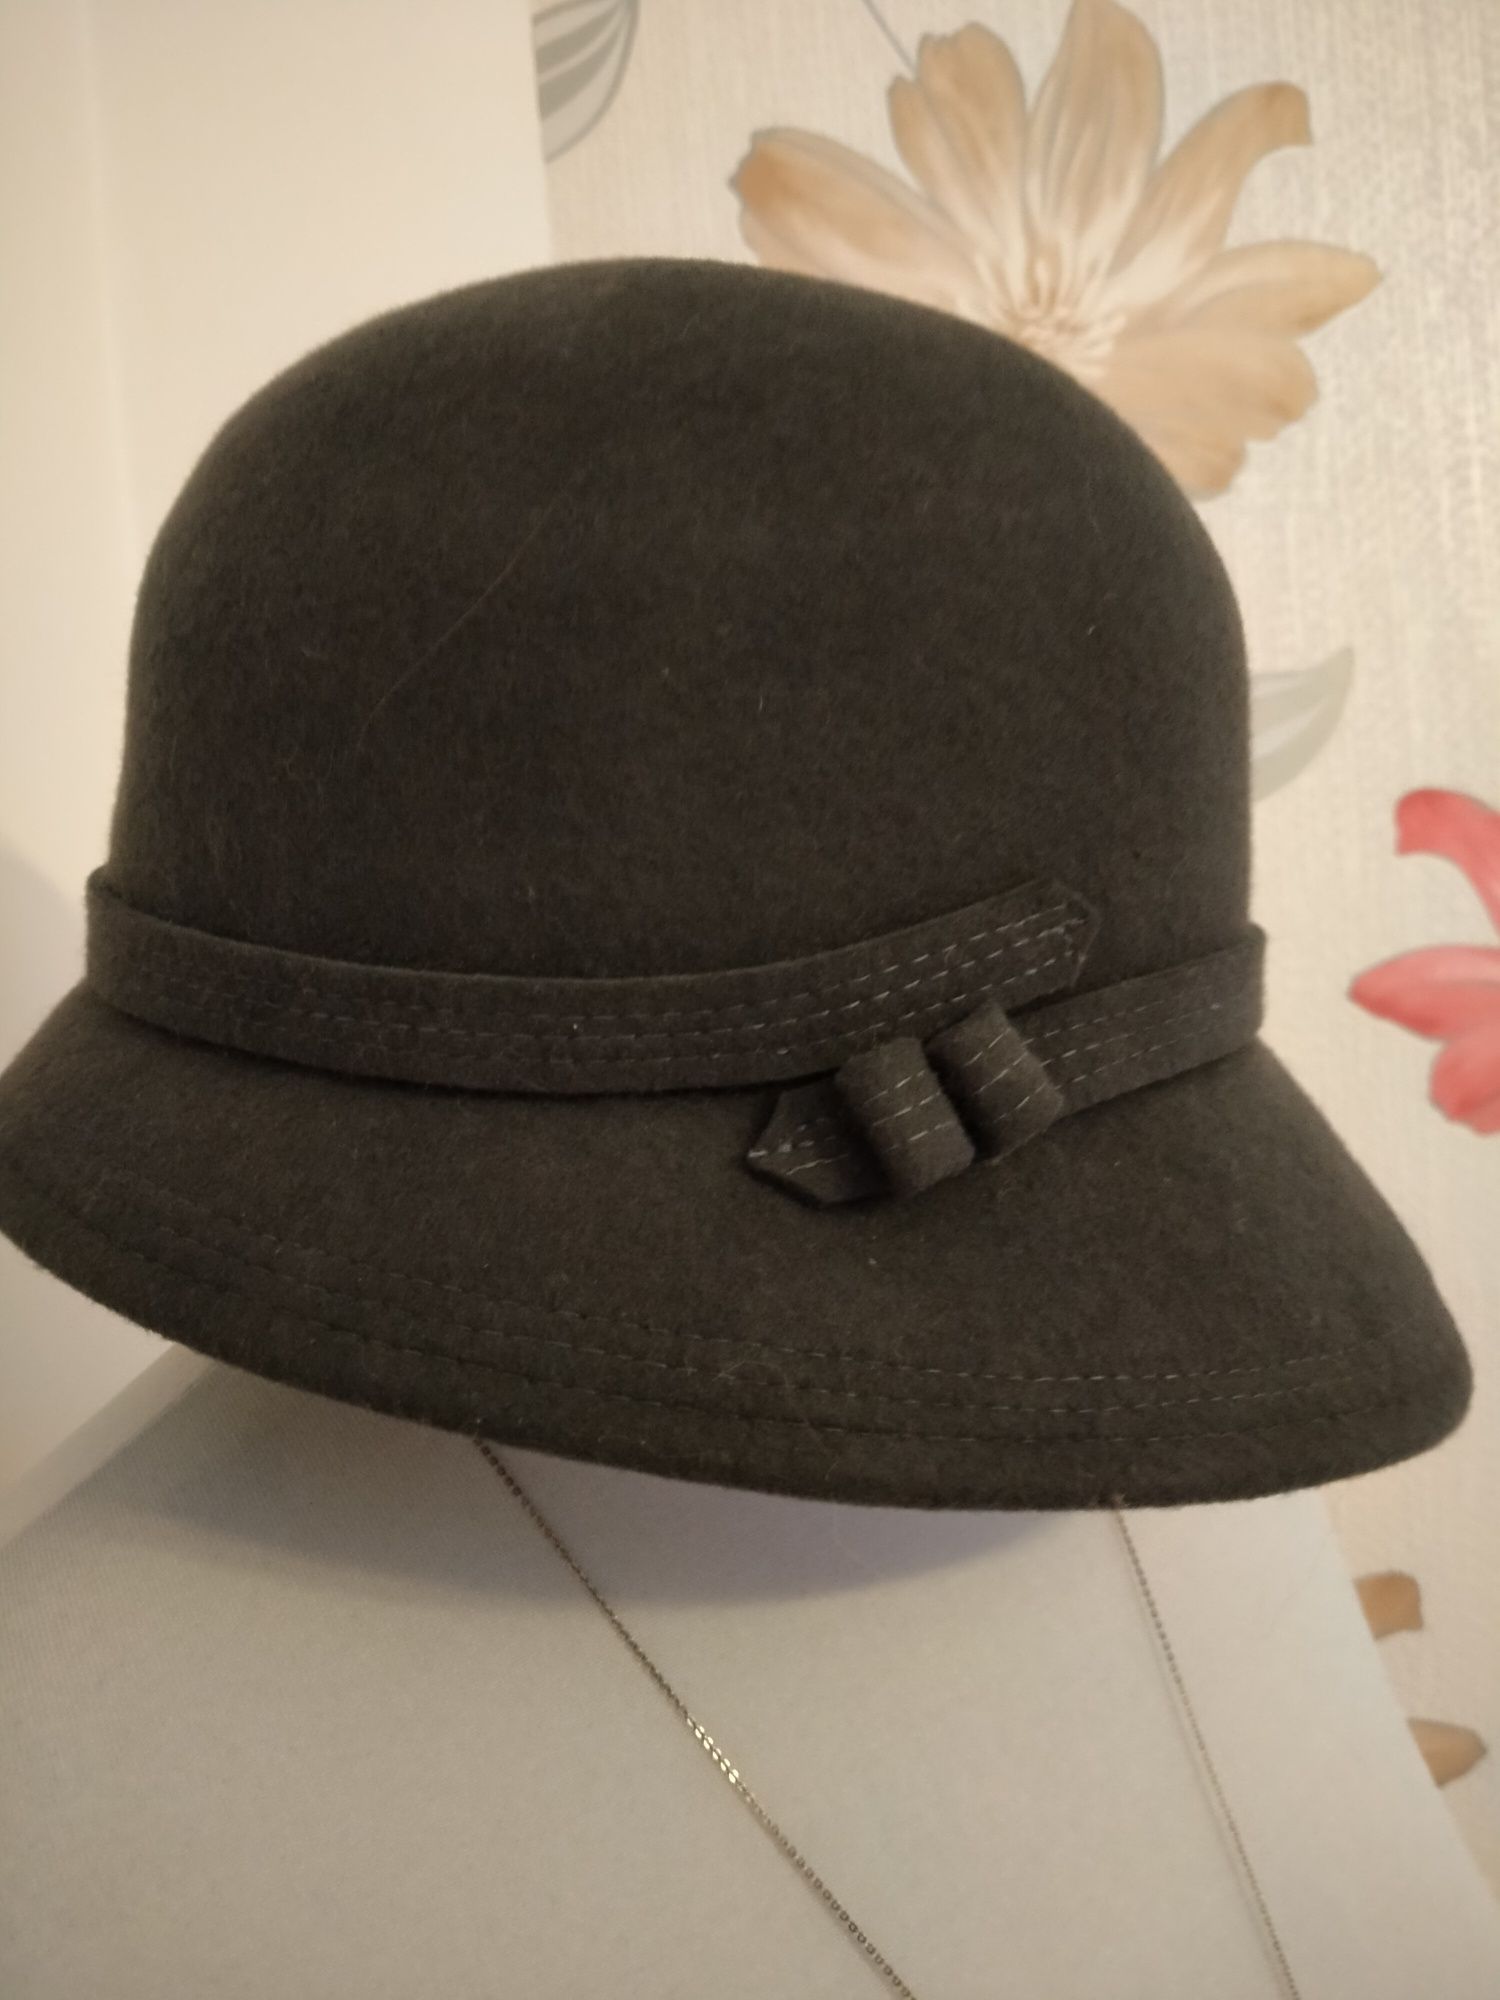 Kapelusz, kapelusz